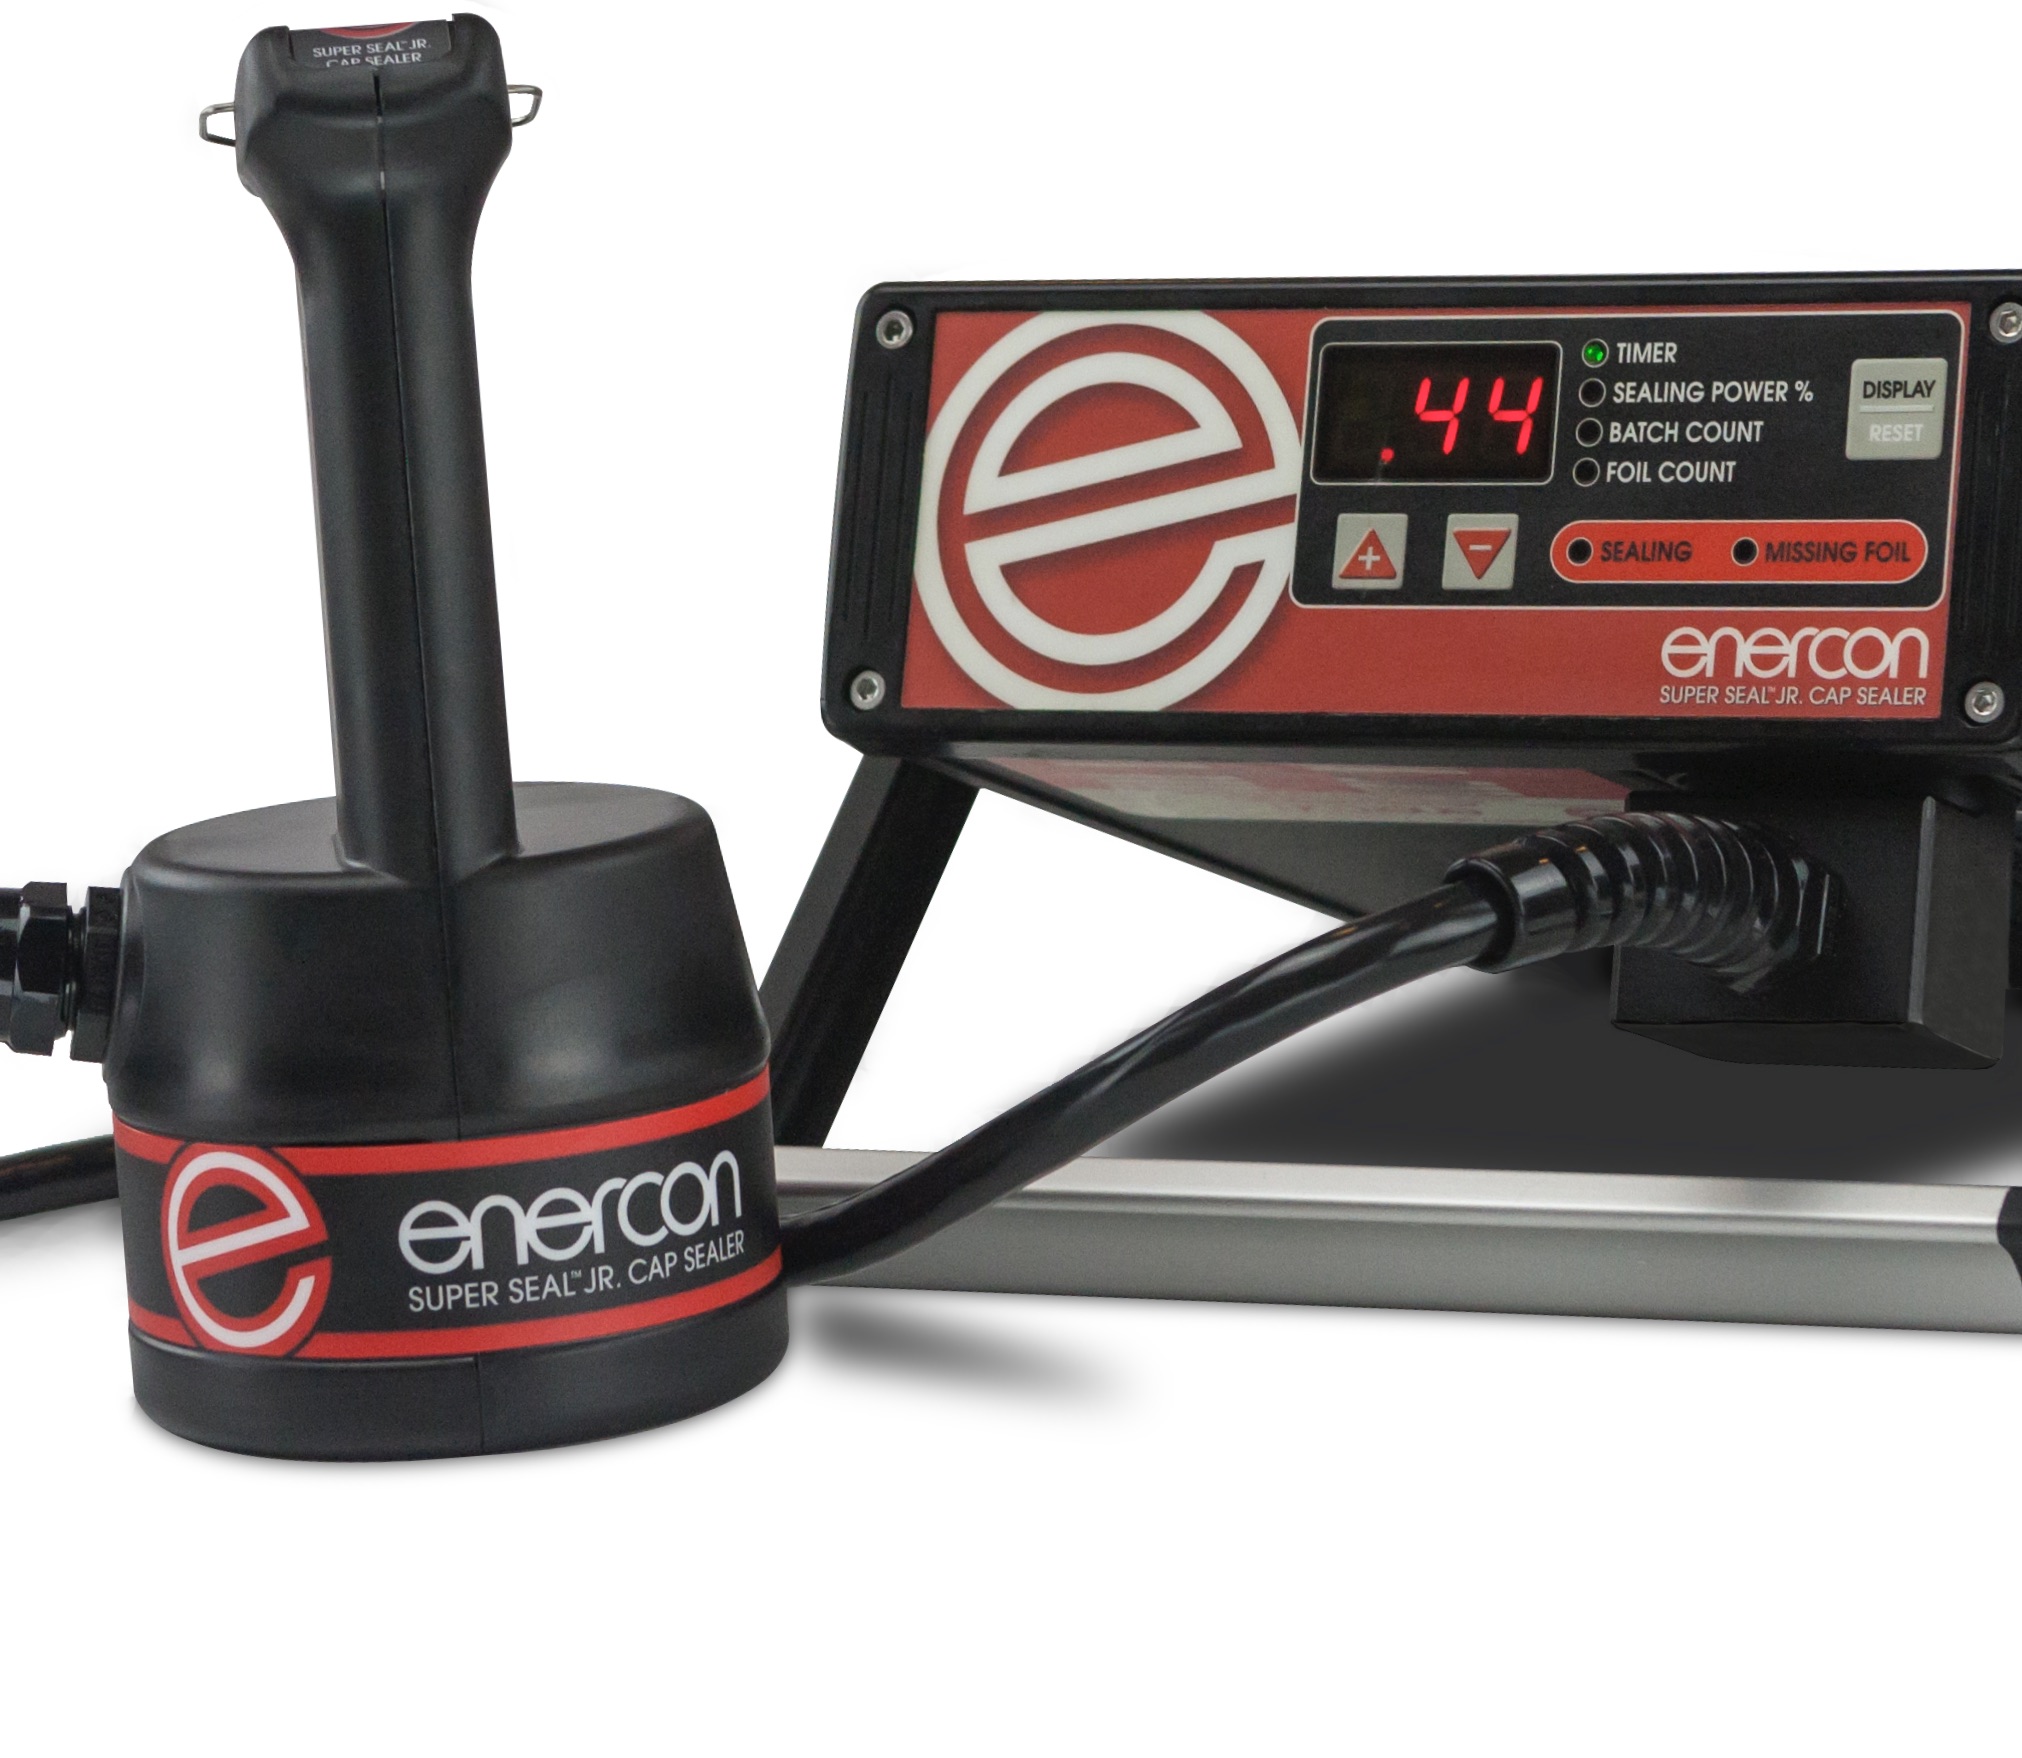 Enercon Super Seal Jr. Handheld Induction Sealer #LM5070-01